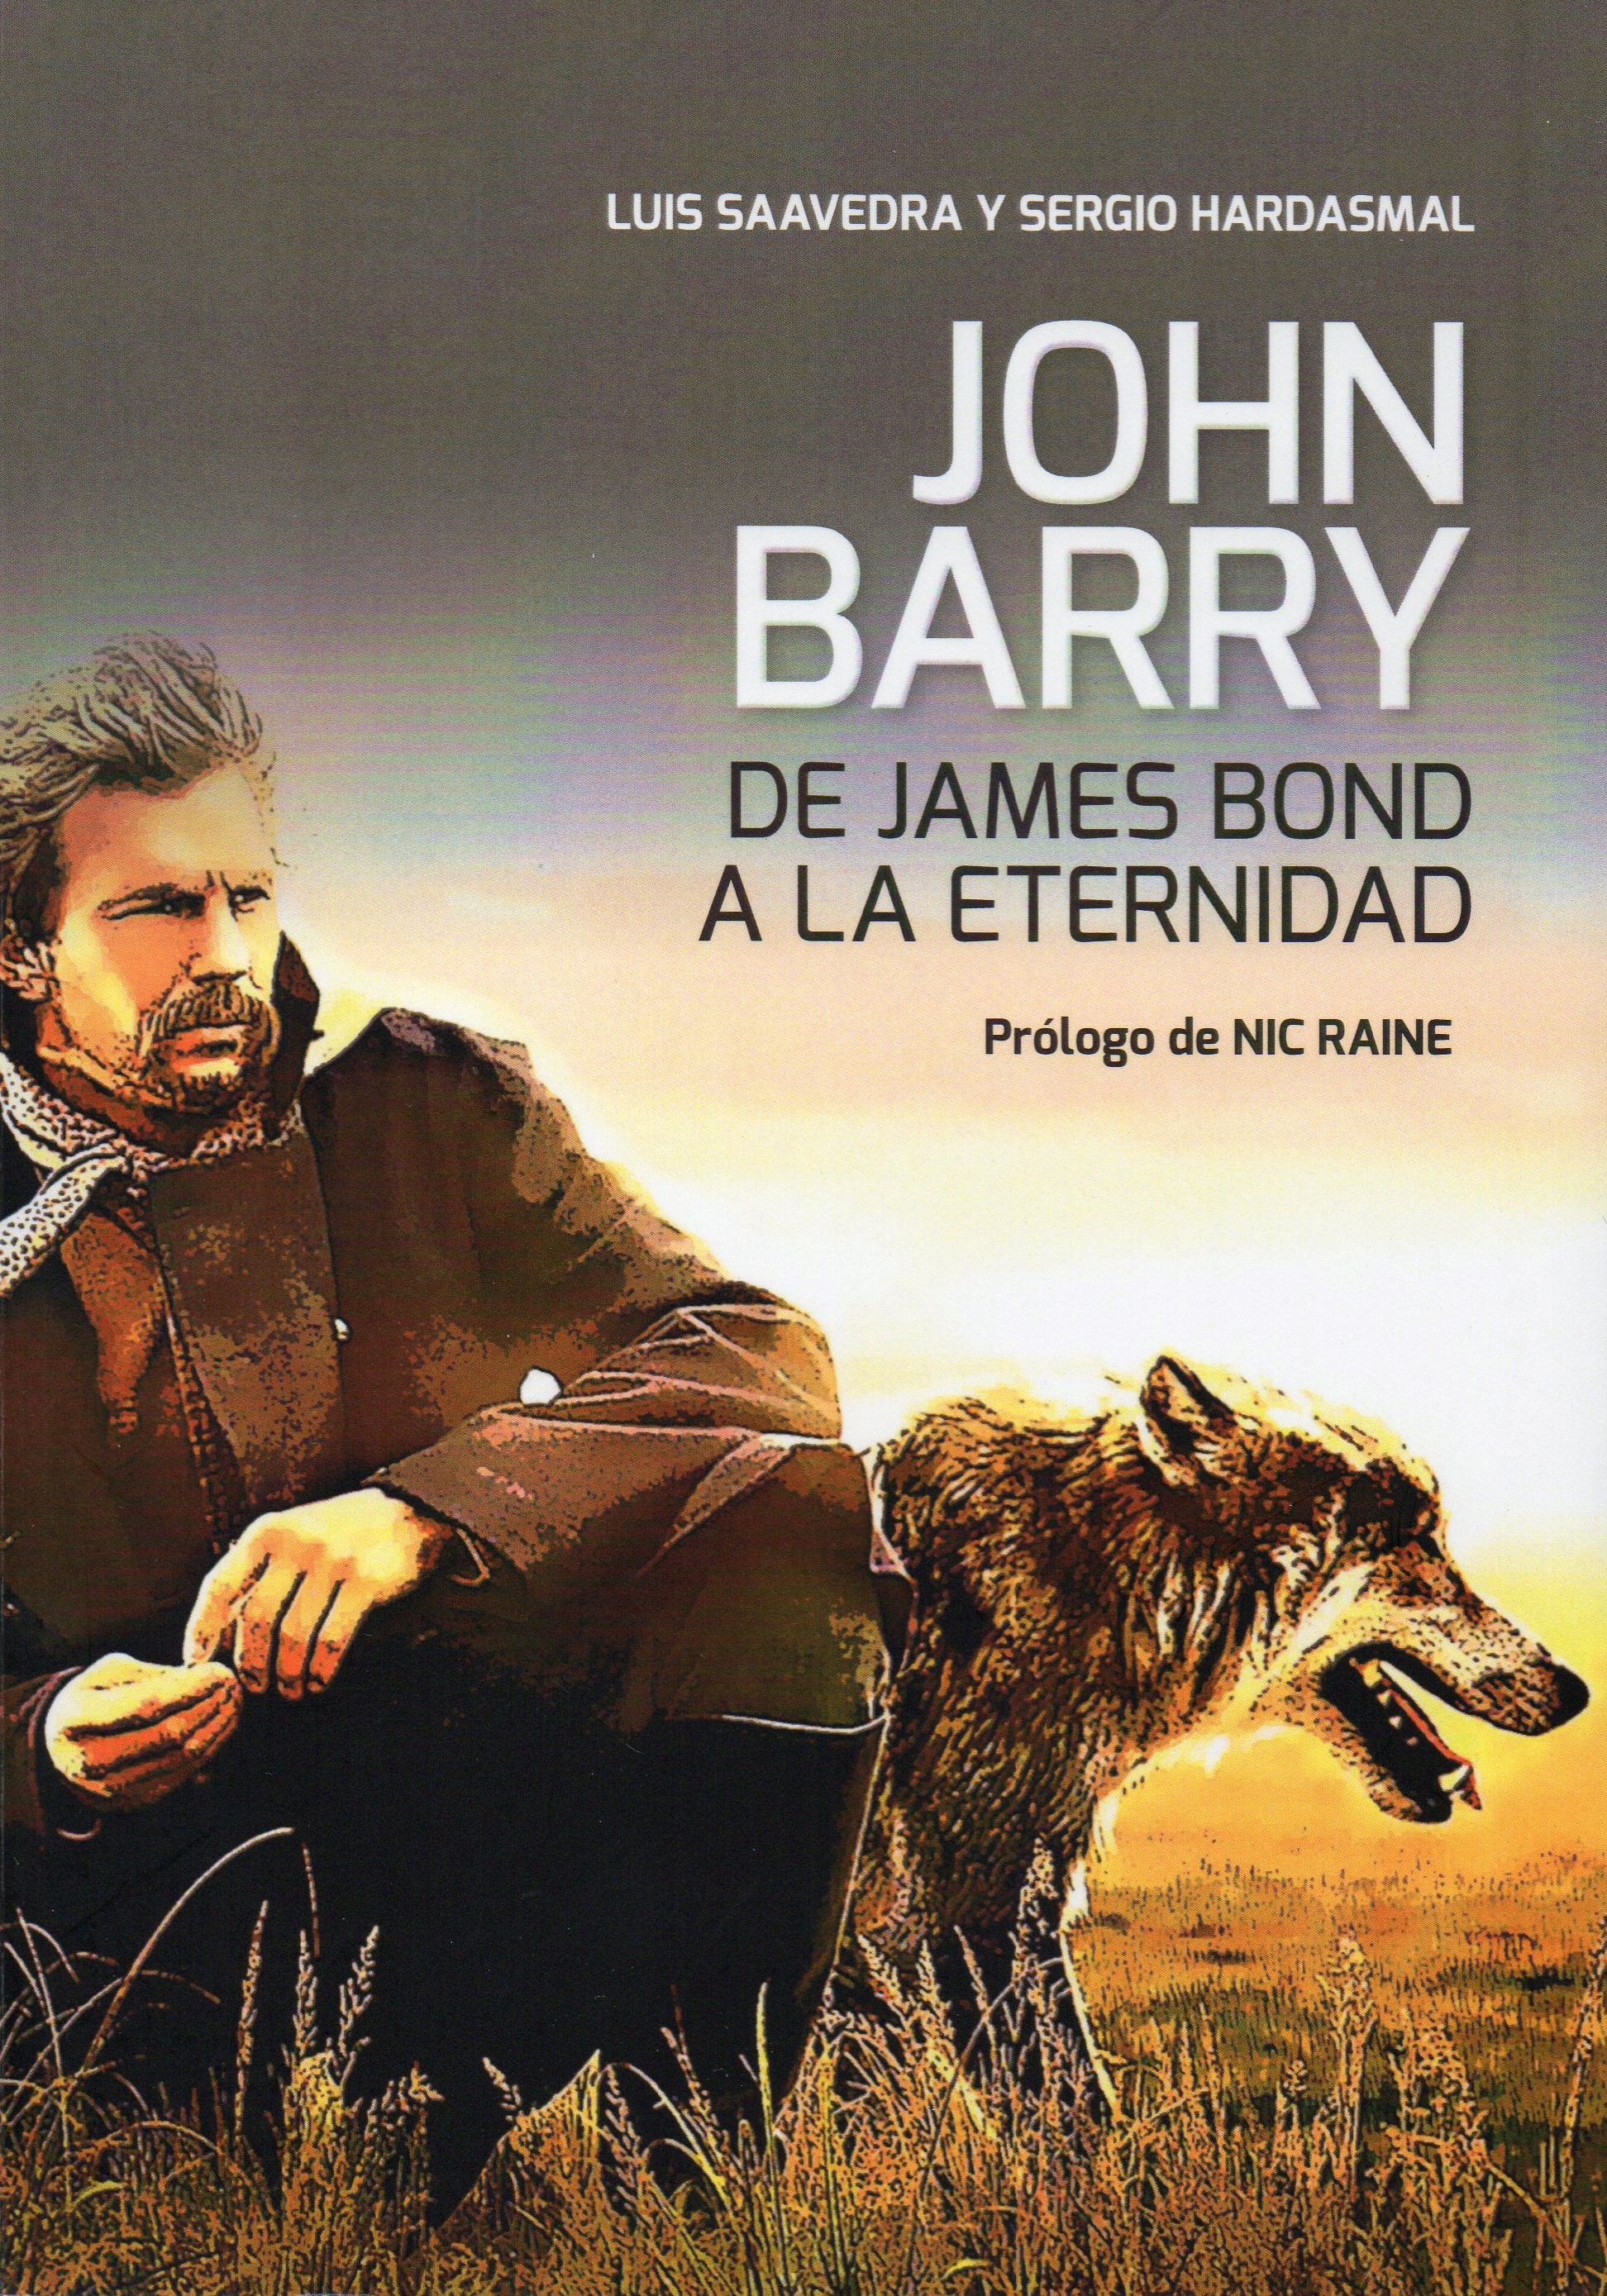 John Barry: de James Bond a l'eternitat